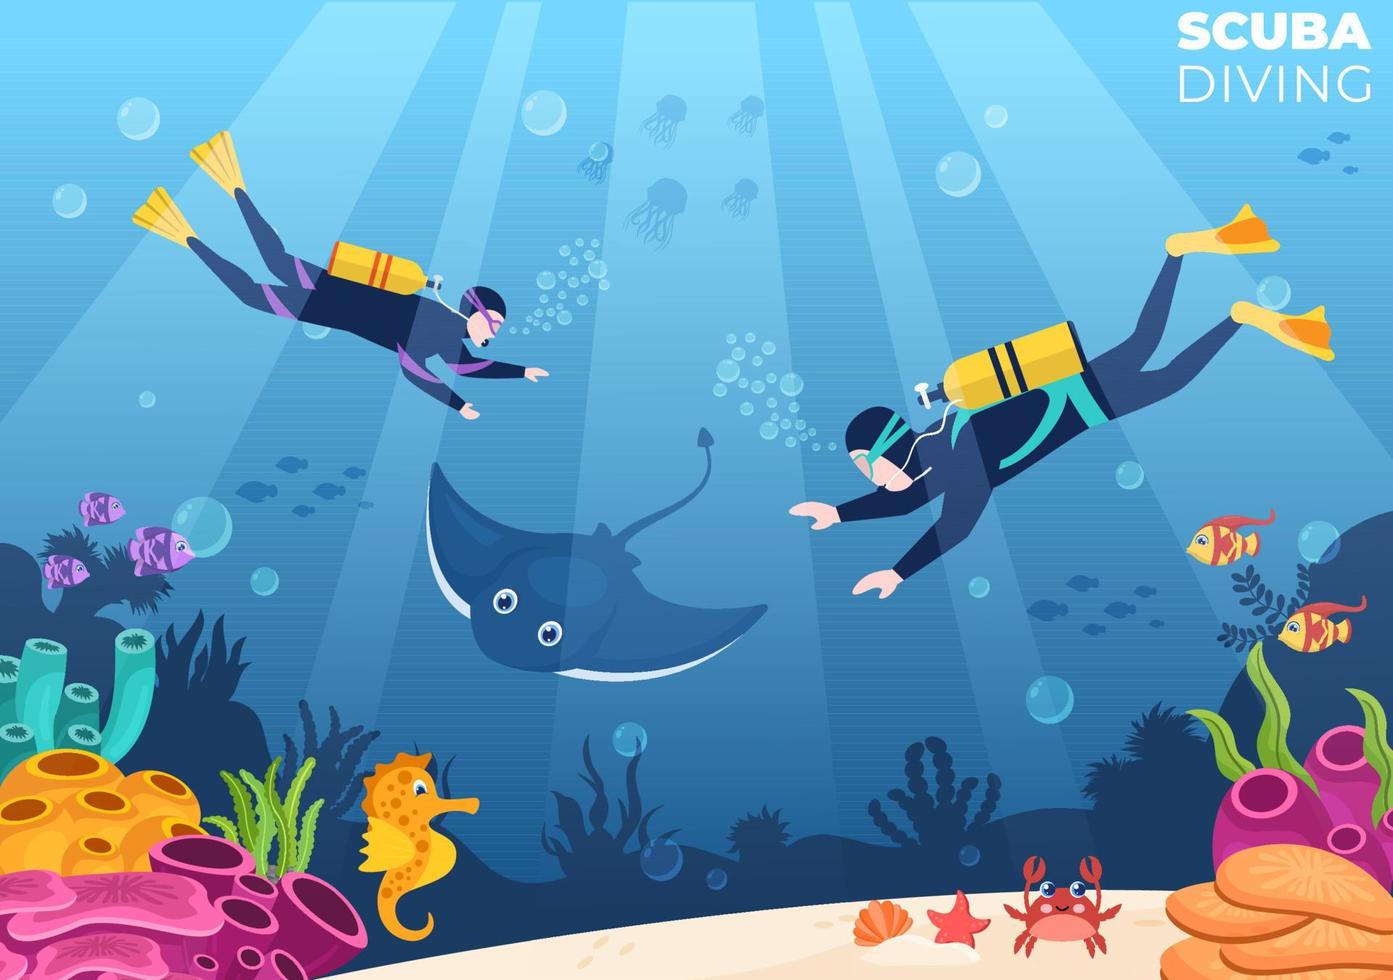 plongée sous-marine avec équipement de natation sous-marine pour explorer les récifs coralliens, la flore et la faune marines ou les poissons dans l'océan en illustration vectorielle de dessin animé plat vecteur